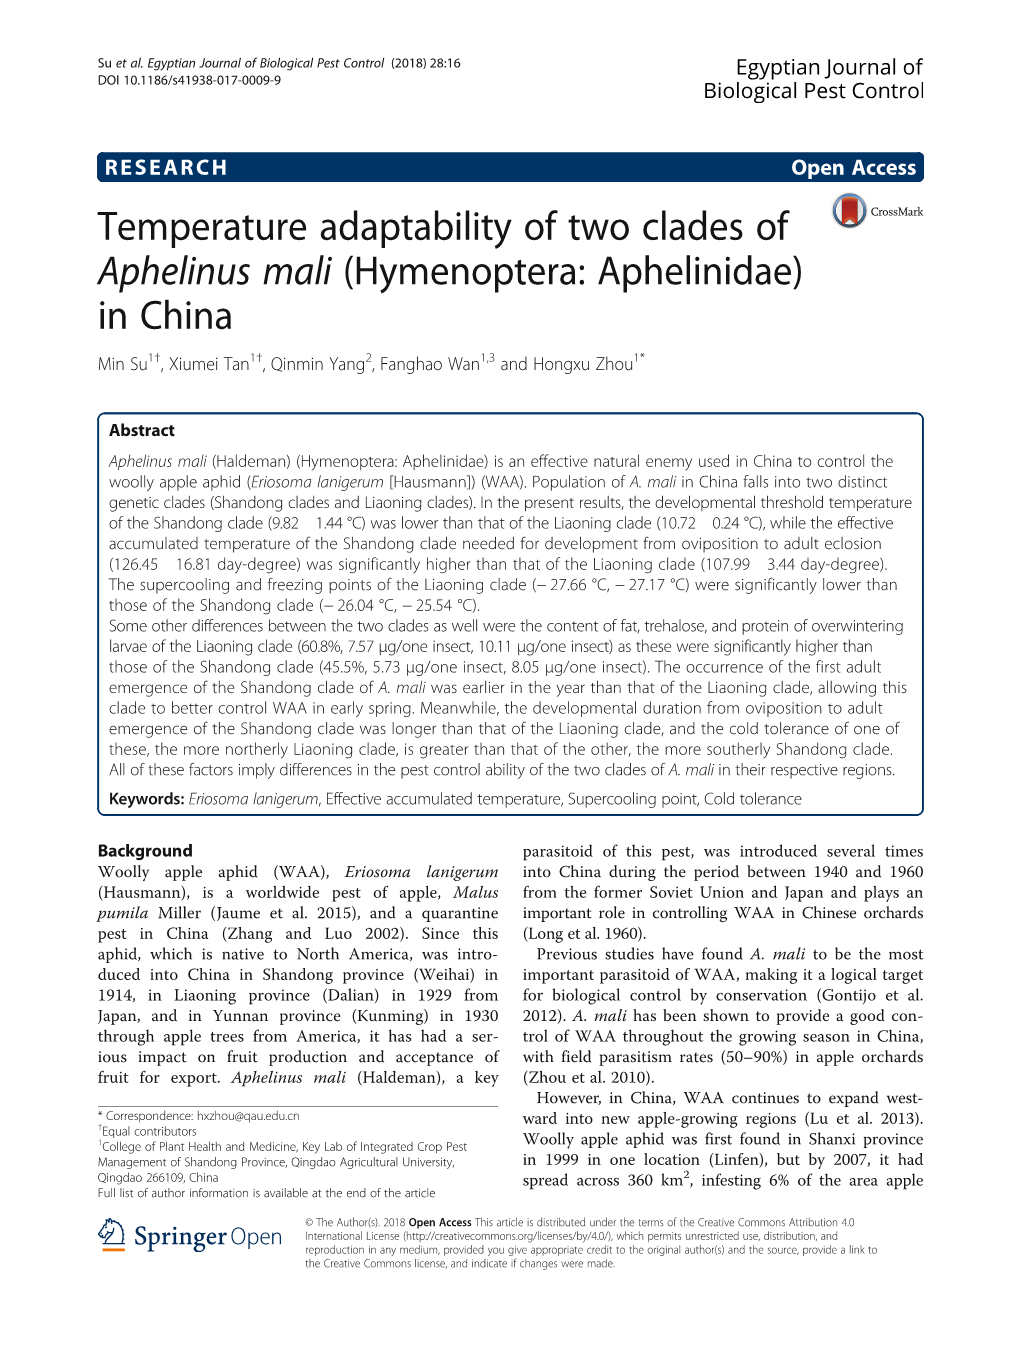 Temperature Adaptability of Two Clades of Aphelinus Mali (Hymenoptera: Aphelinidae) in China Min Su1†, Xiumei Tan1†, Qinmin Yang2, Fanghao Wan1,3 and Hongxu Zhou1*